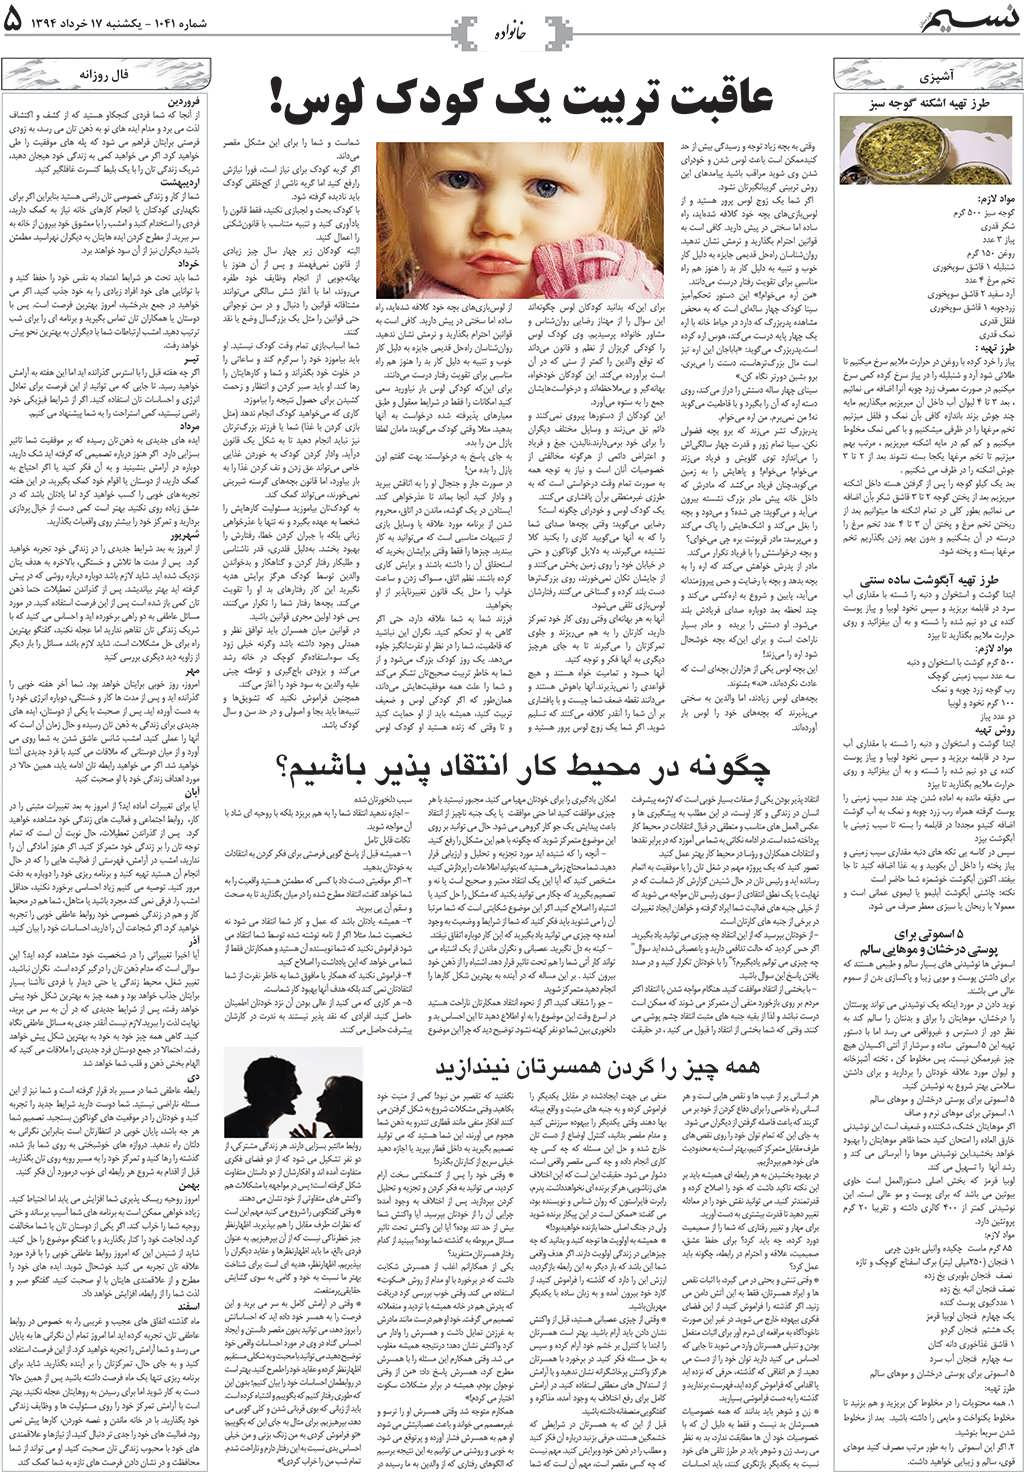 صفحه خانواده روزنامه نسیم شماره 1041